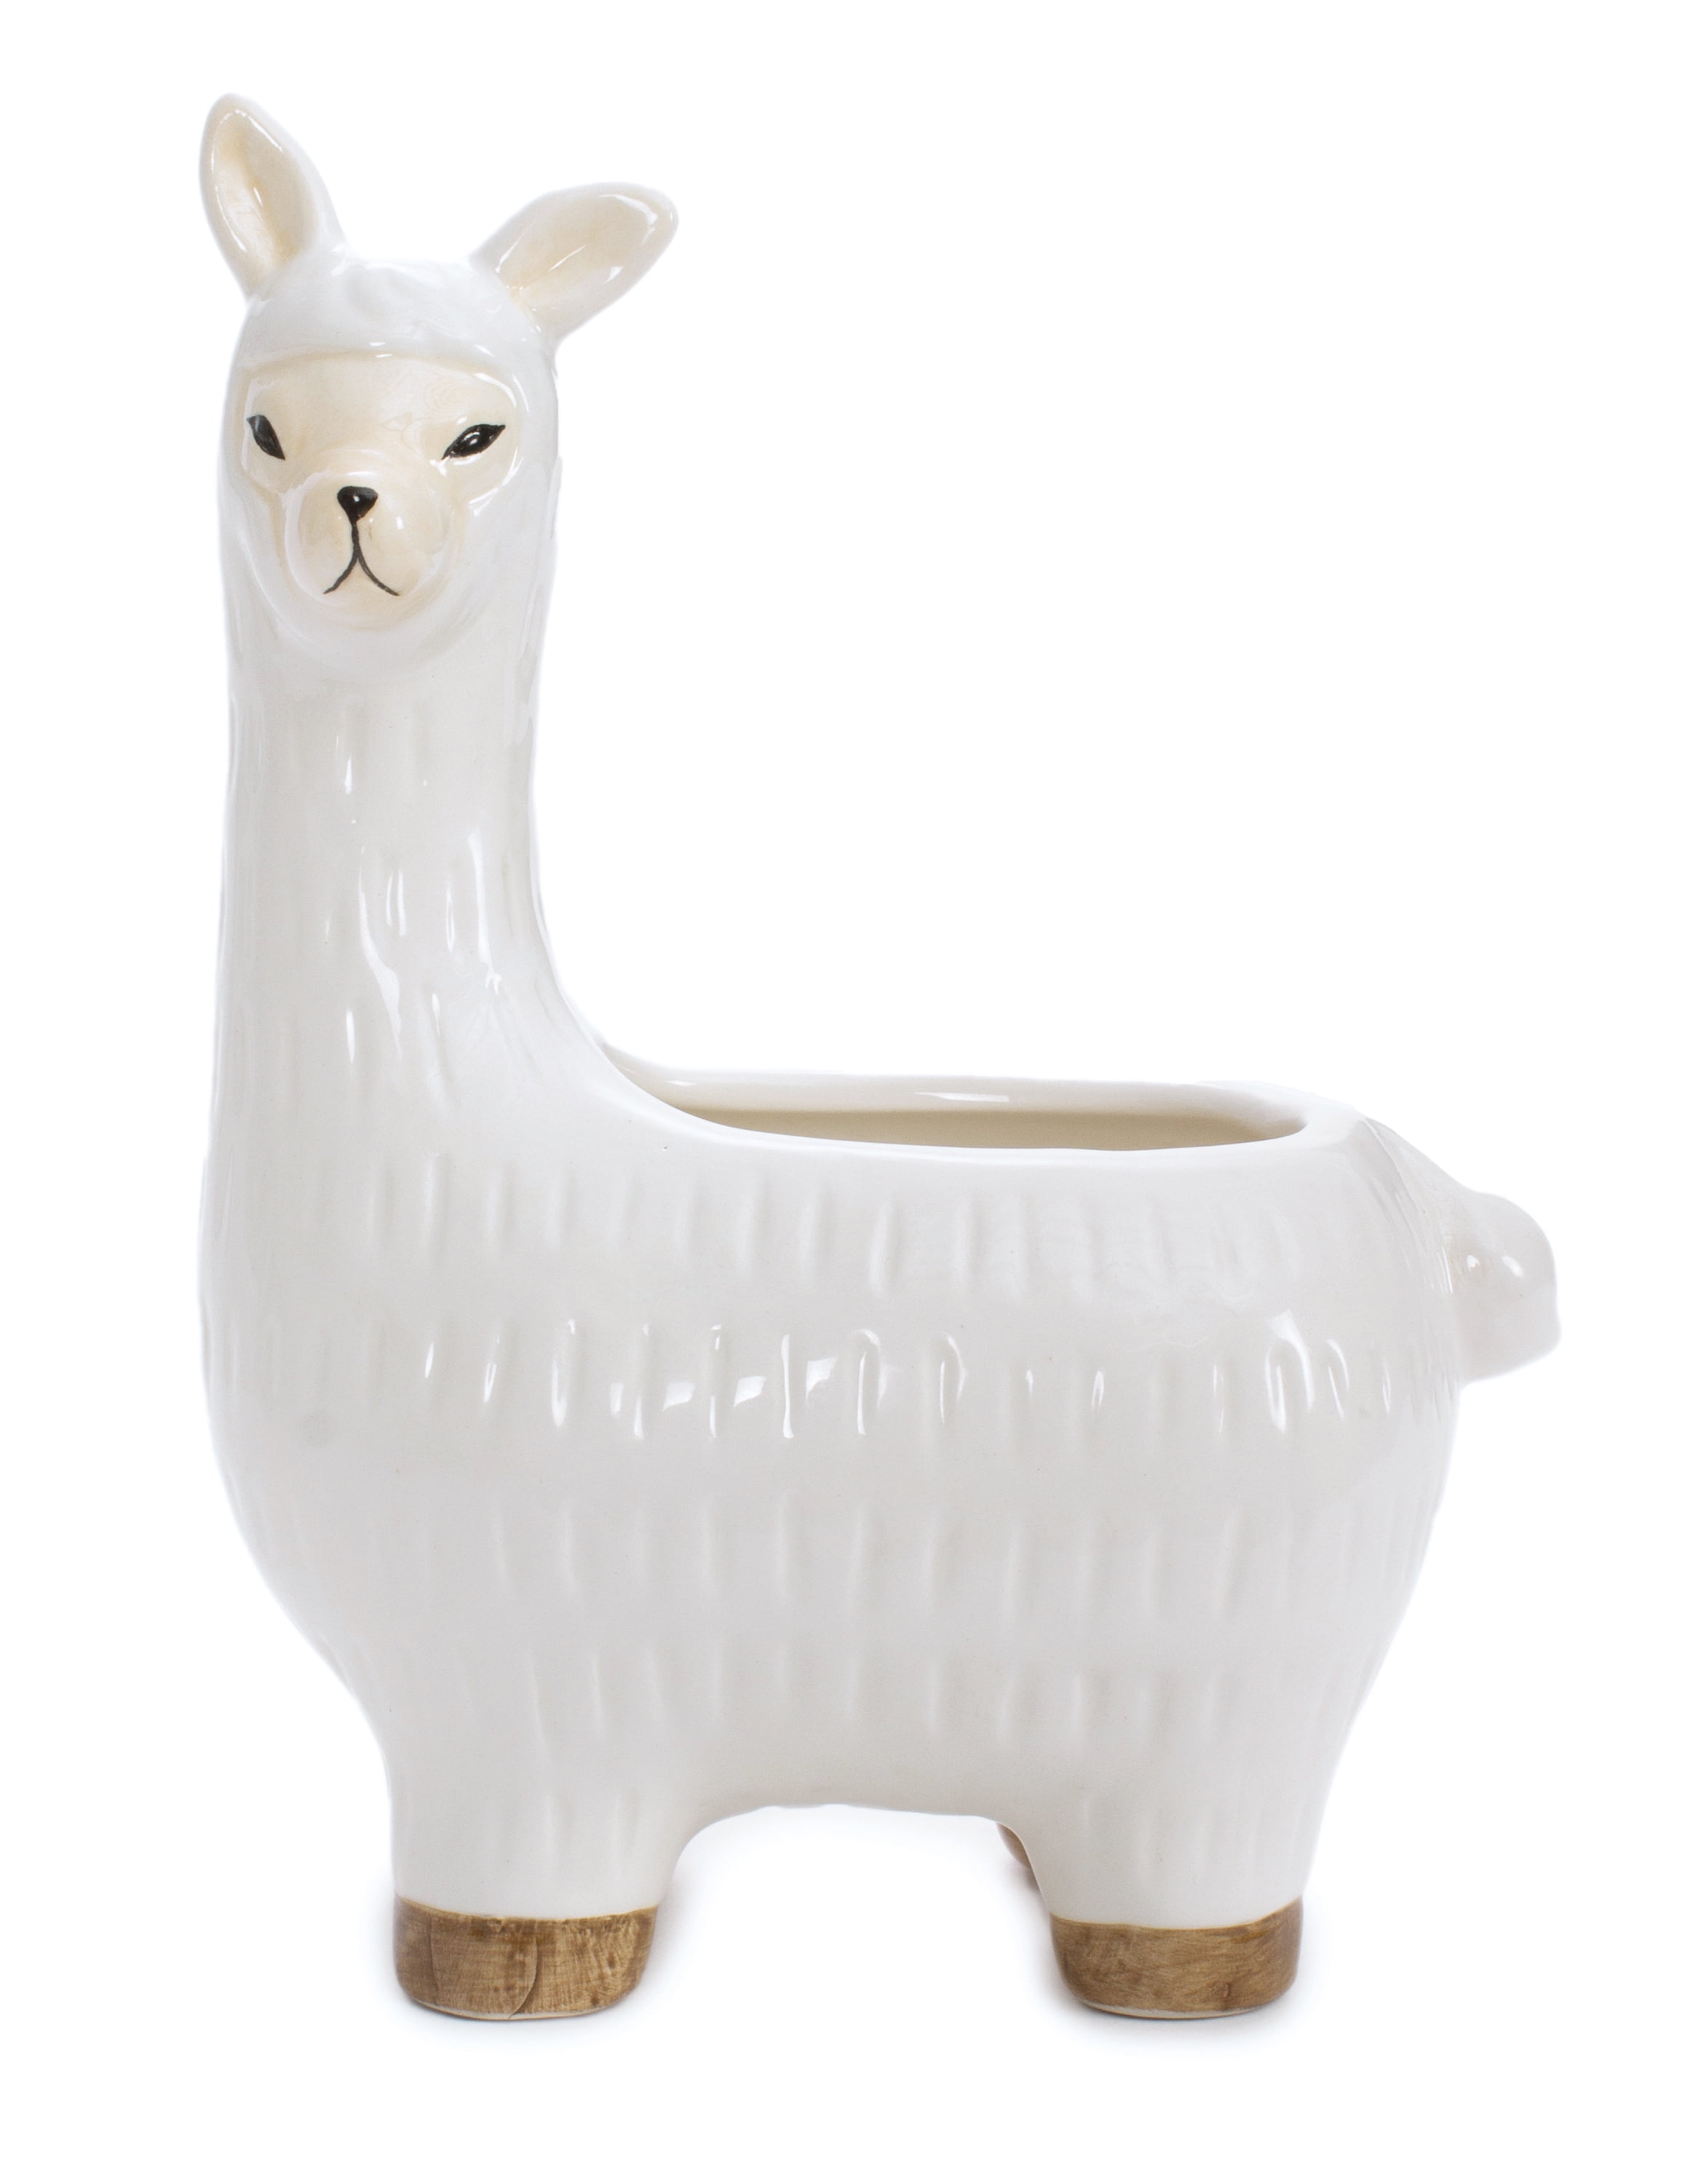 Leisure Arts Ceramic Vase White Llama 7.5 